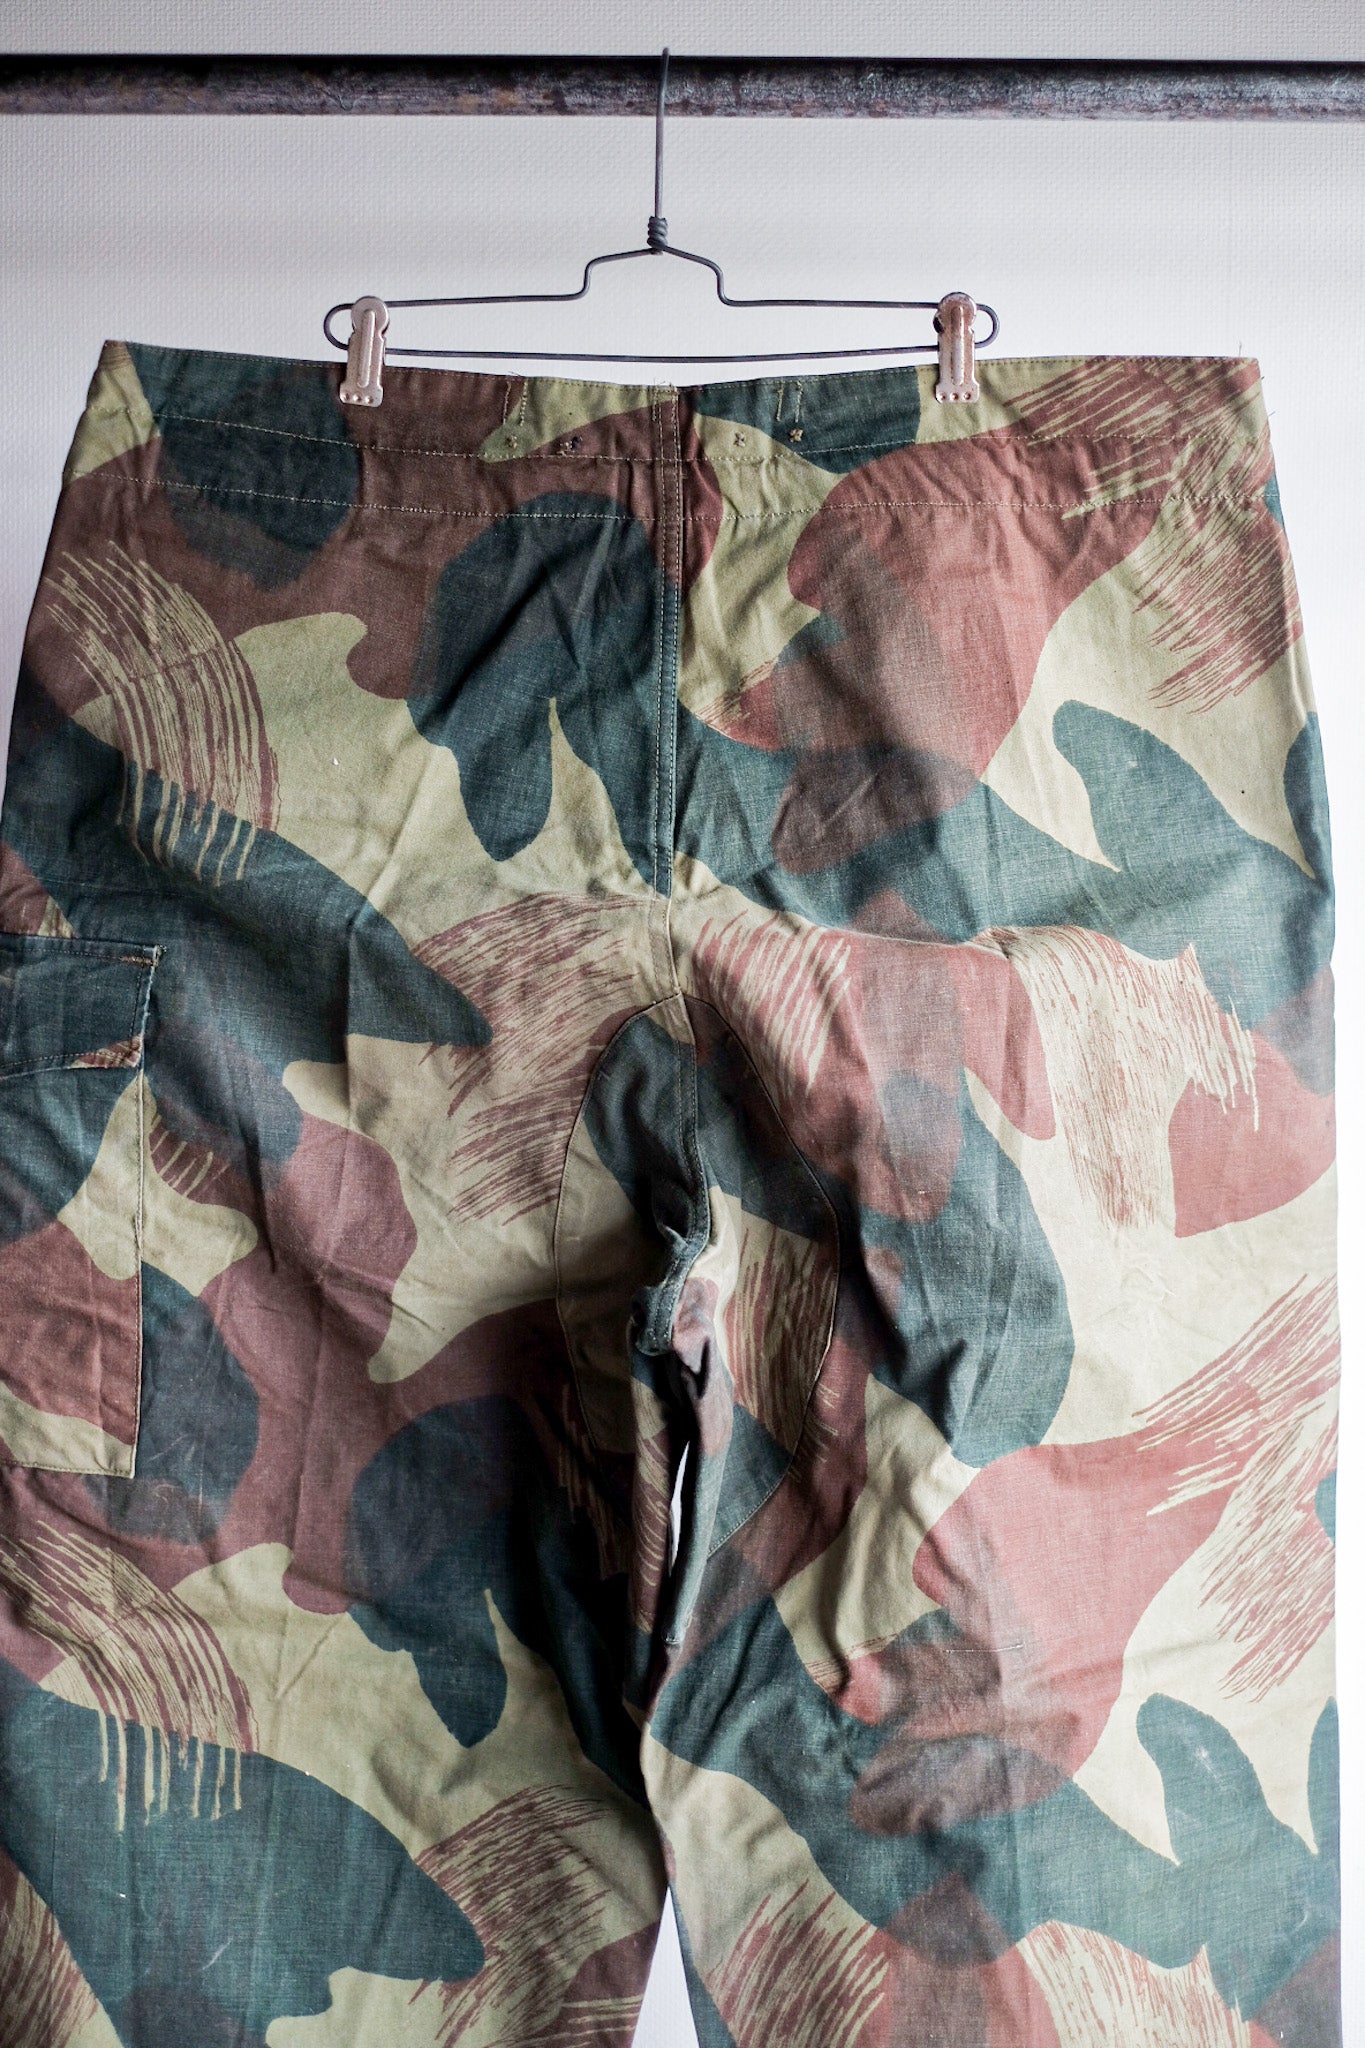 [〜50年代]比利時陸軍筆觸迷彩褲子大小。6